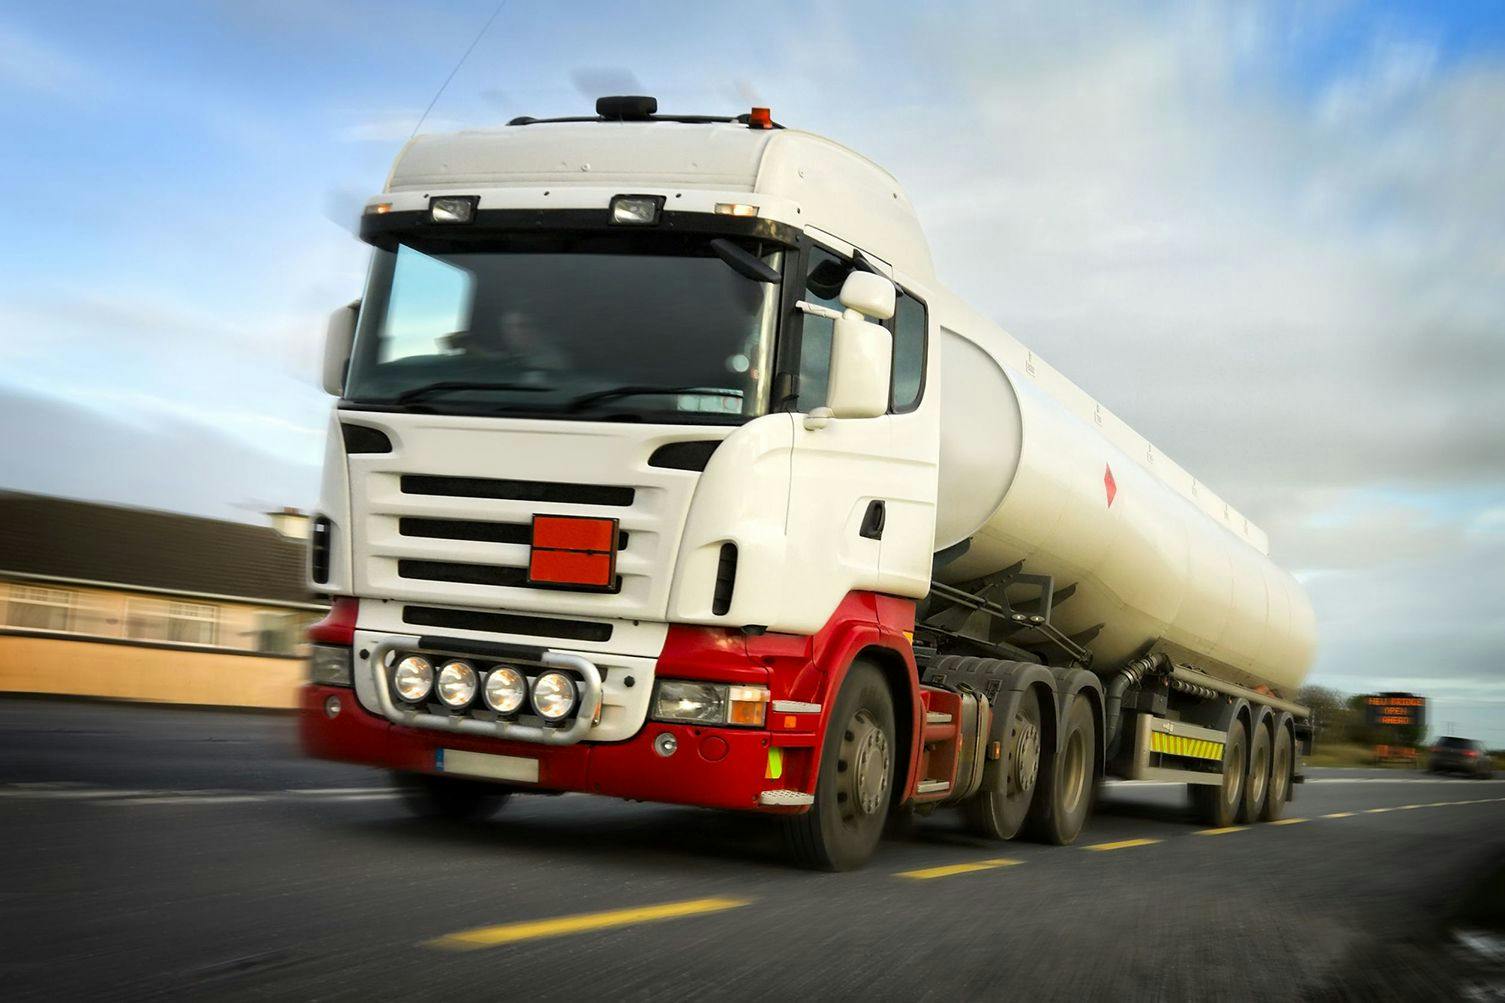 Hazardous Waste Expert Witness Opines On Tanker Truck Cleaning Procedures